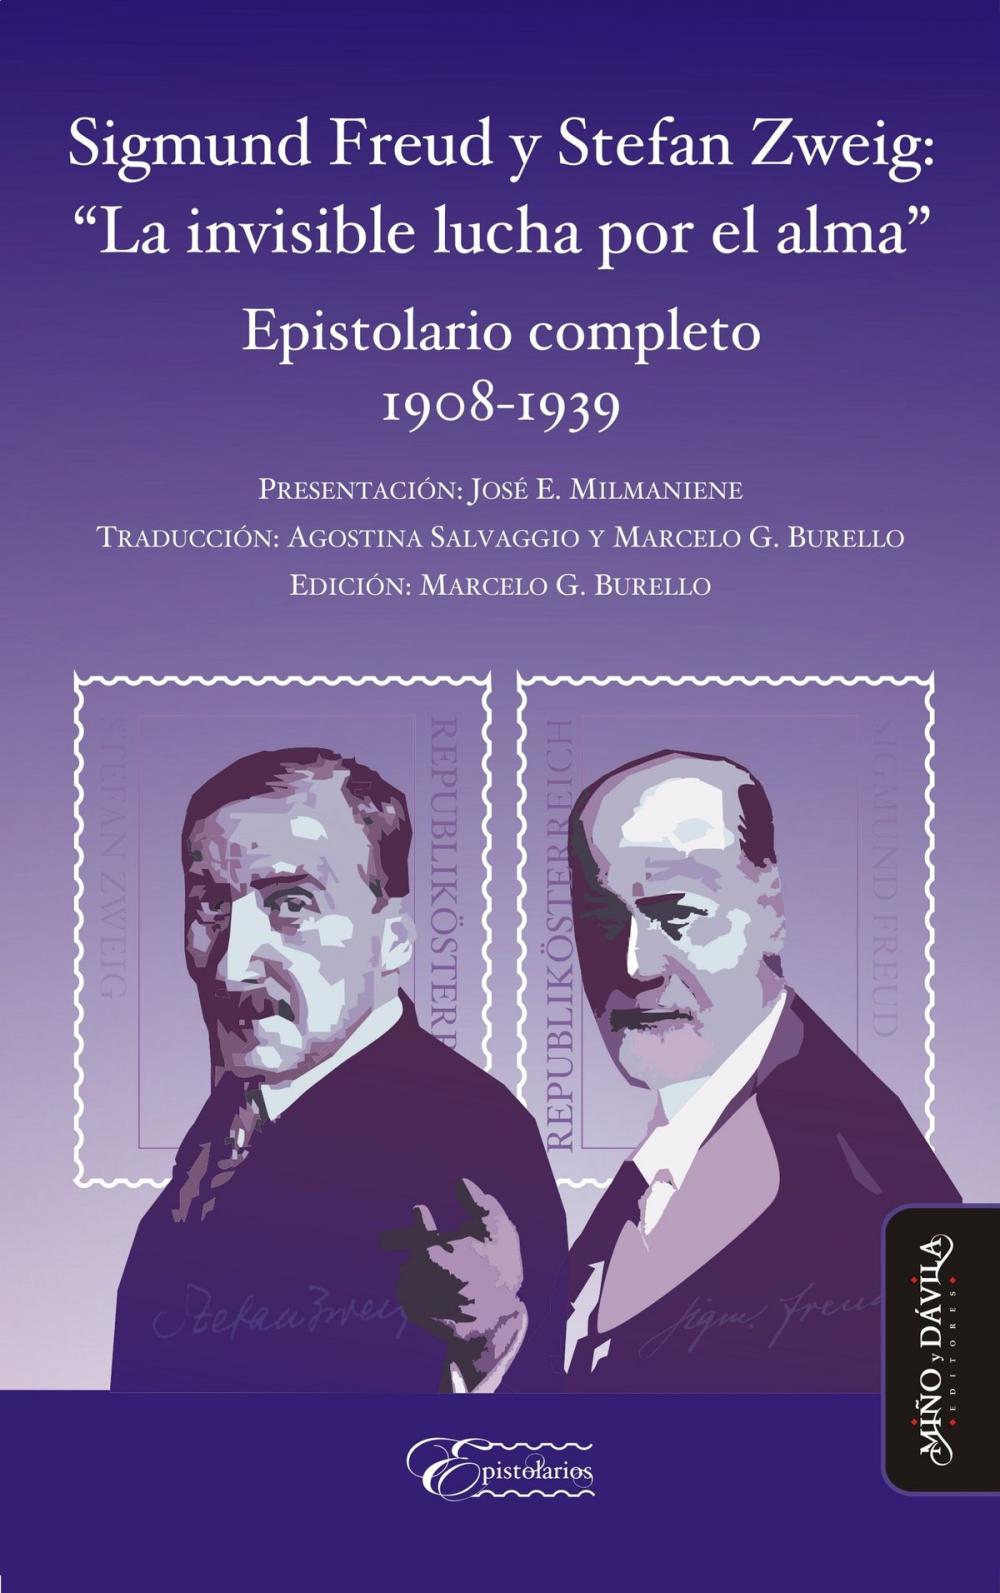 Big bigCover of Sigmund Freud y Stefan Zweig: "La invisible lucha por el alma"